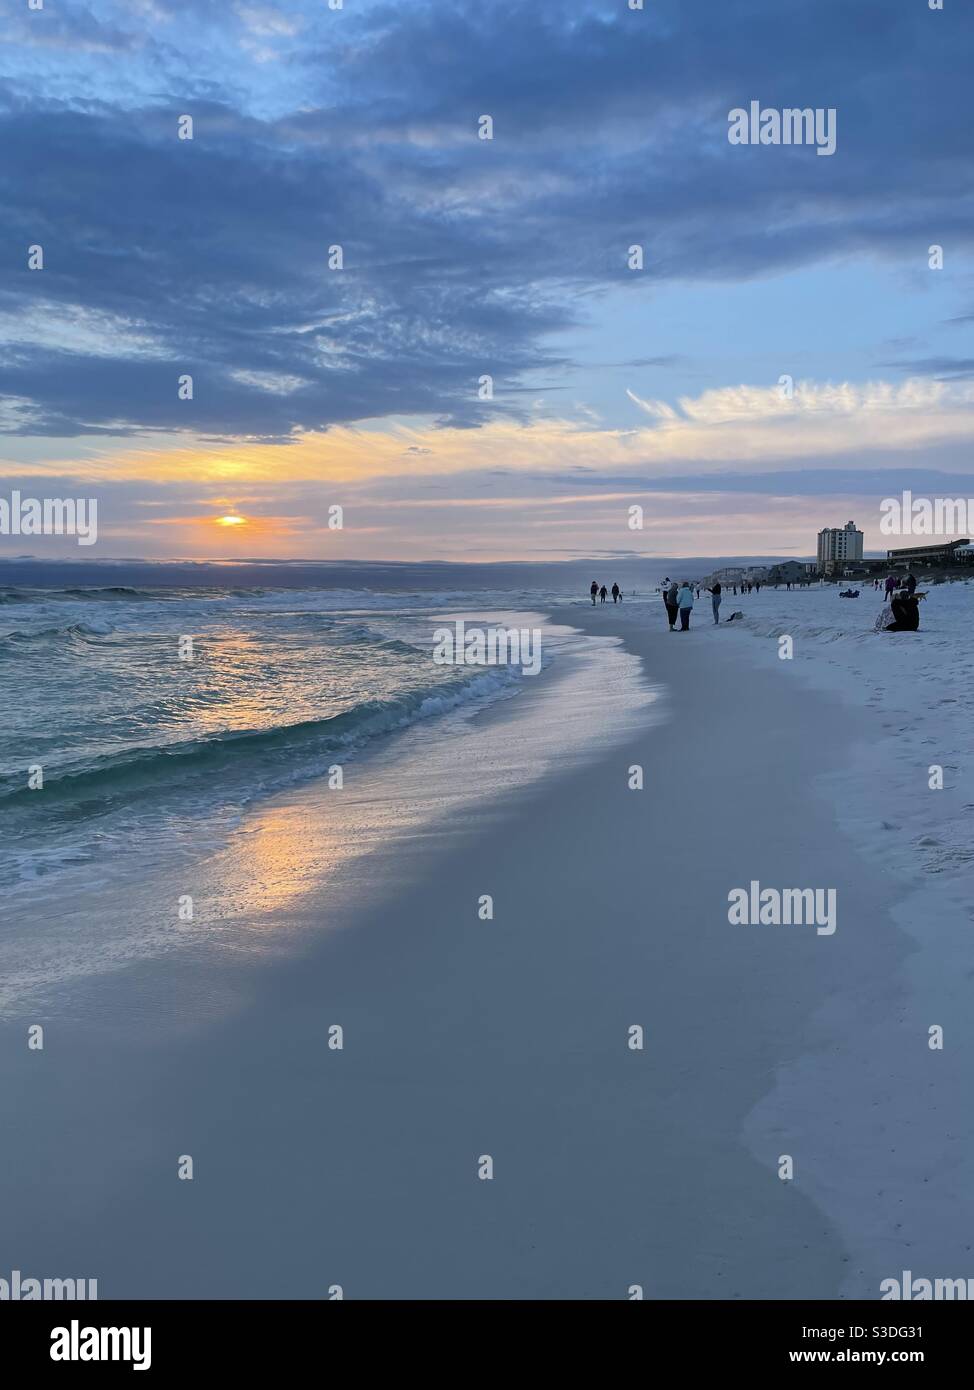 15 février 2021 destin, Floride États-Unis les gens se sont rassemblés lors d'une journée d'hiver froide pour observer le coucher du soleil sur la plage Banque D'Images